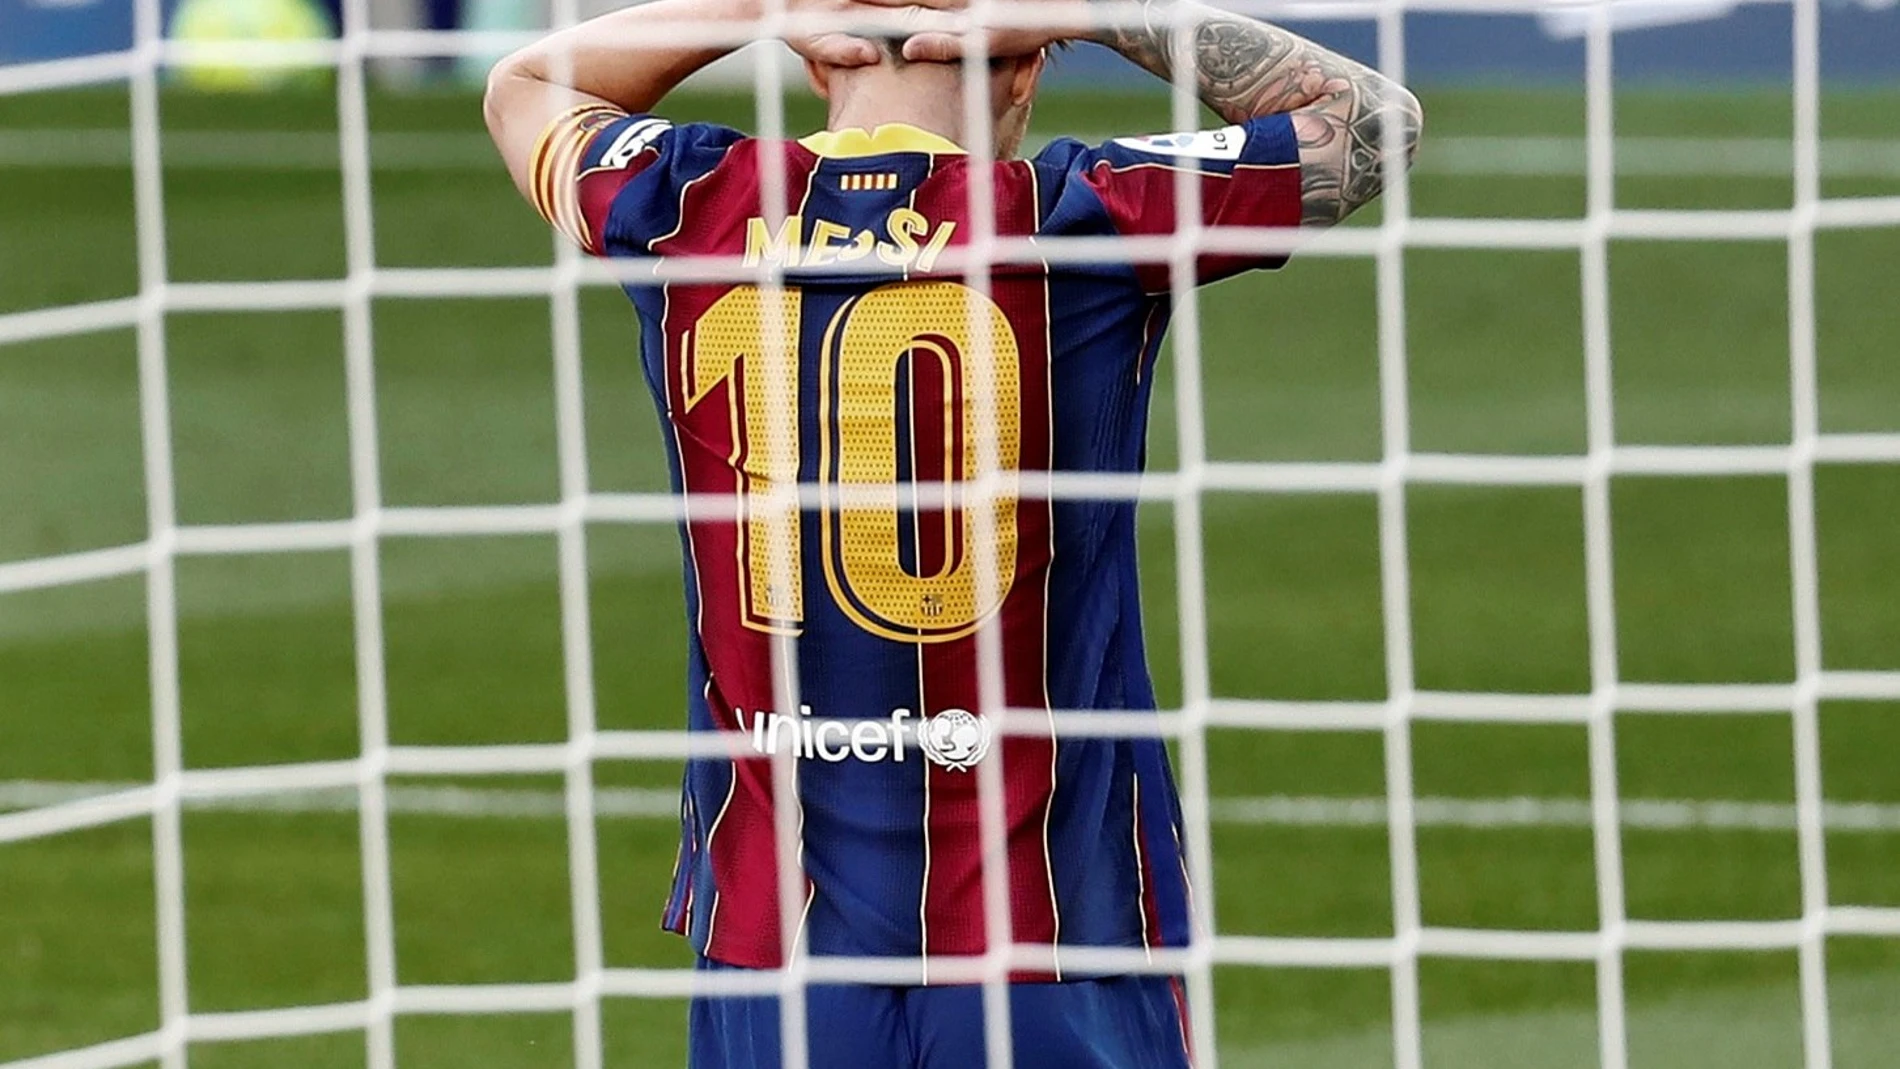 El delantero argentino del FC Barcelona, Leo Messi, se lamenta tras fallar una ocasión de gol en el último partido contra el Real Madrid